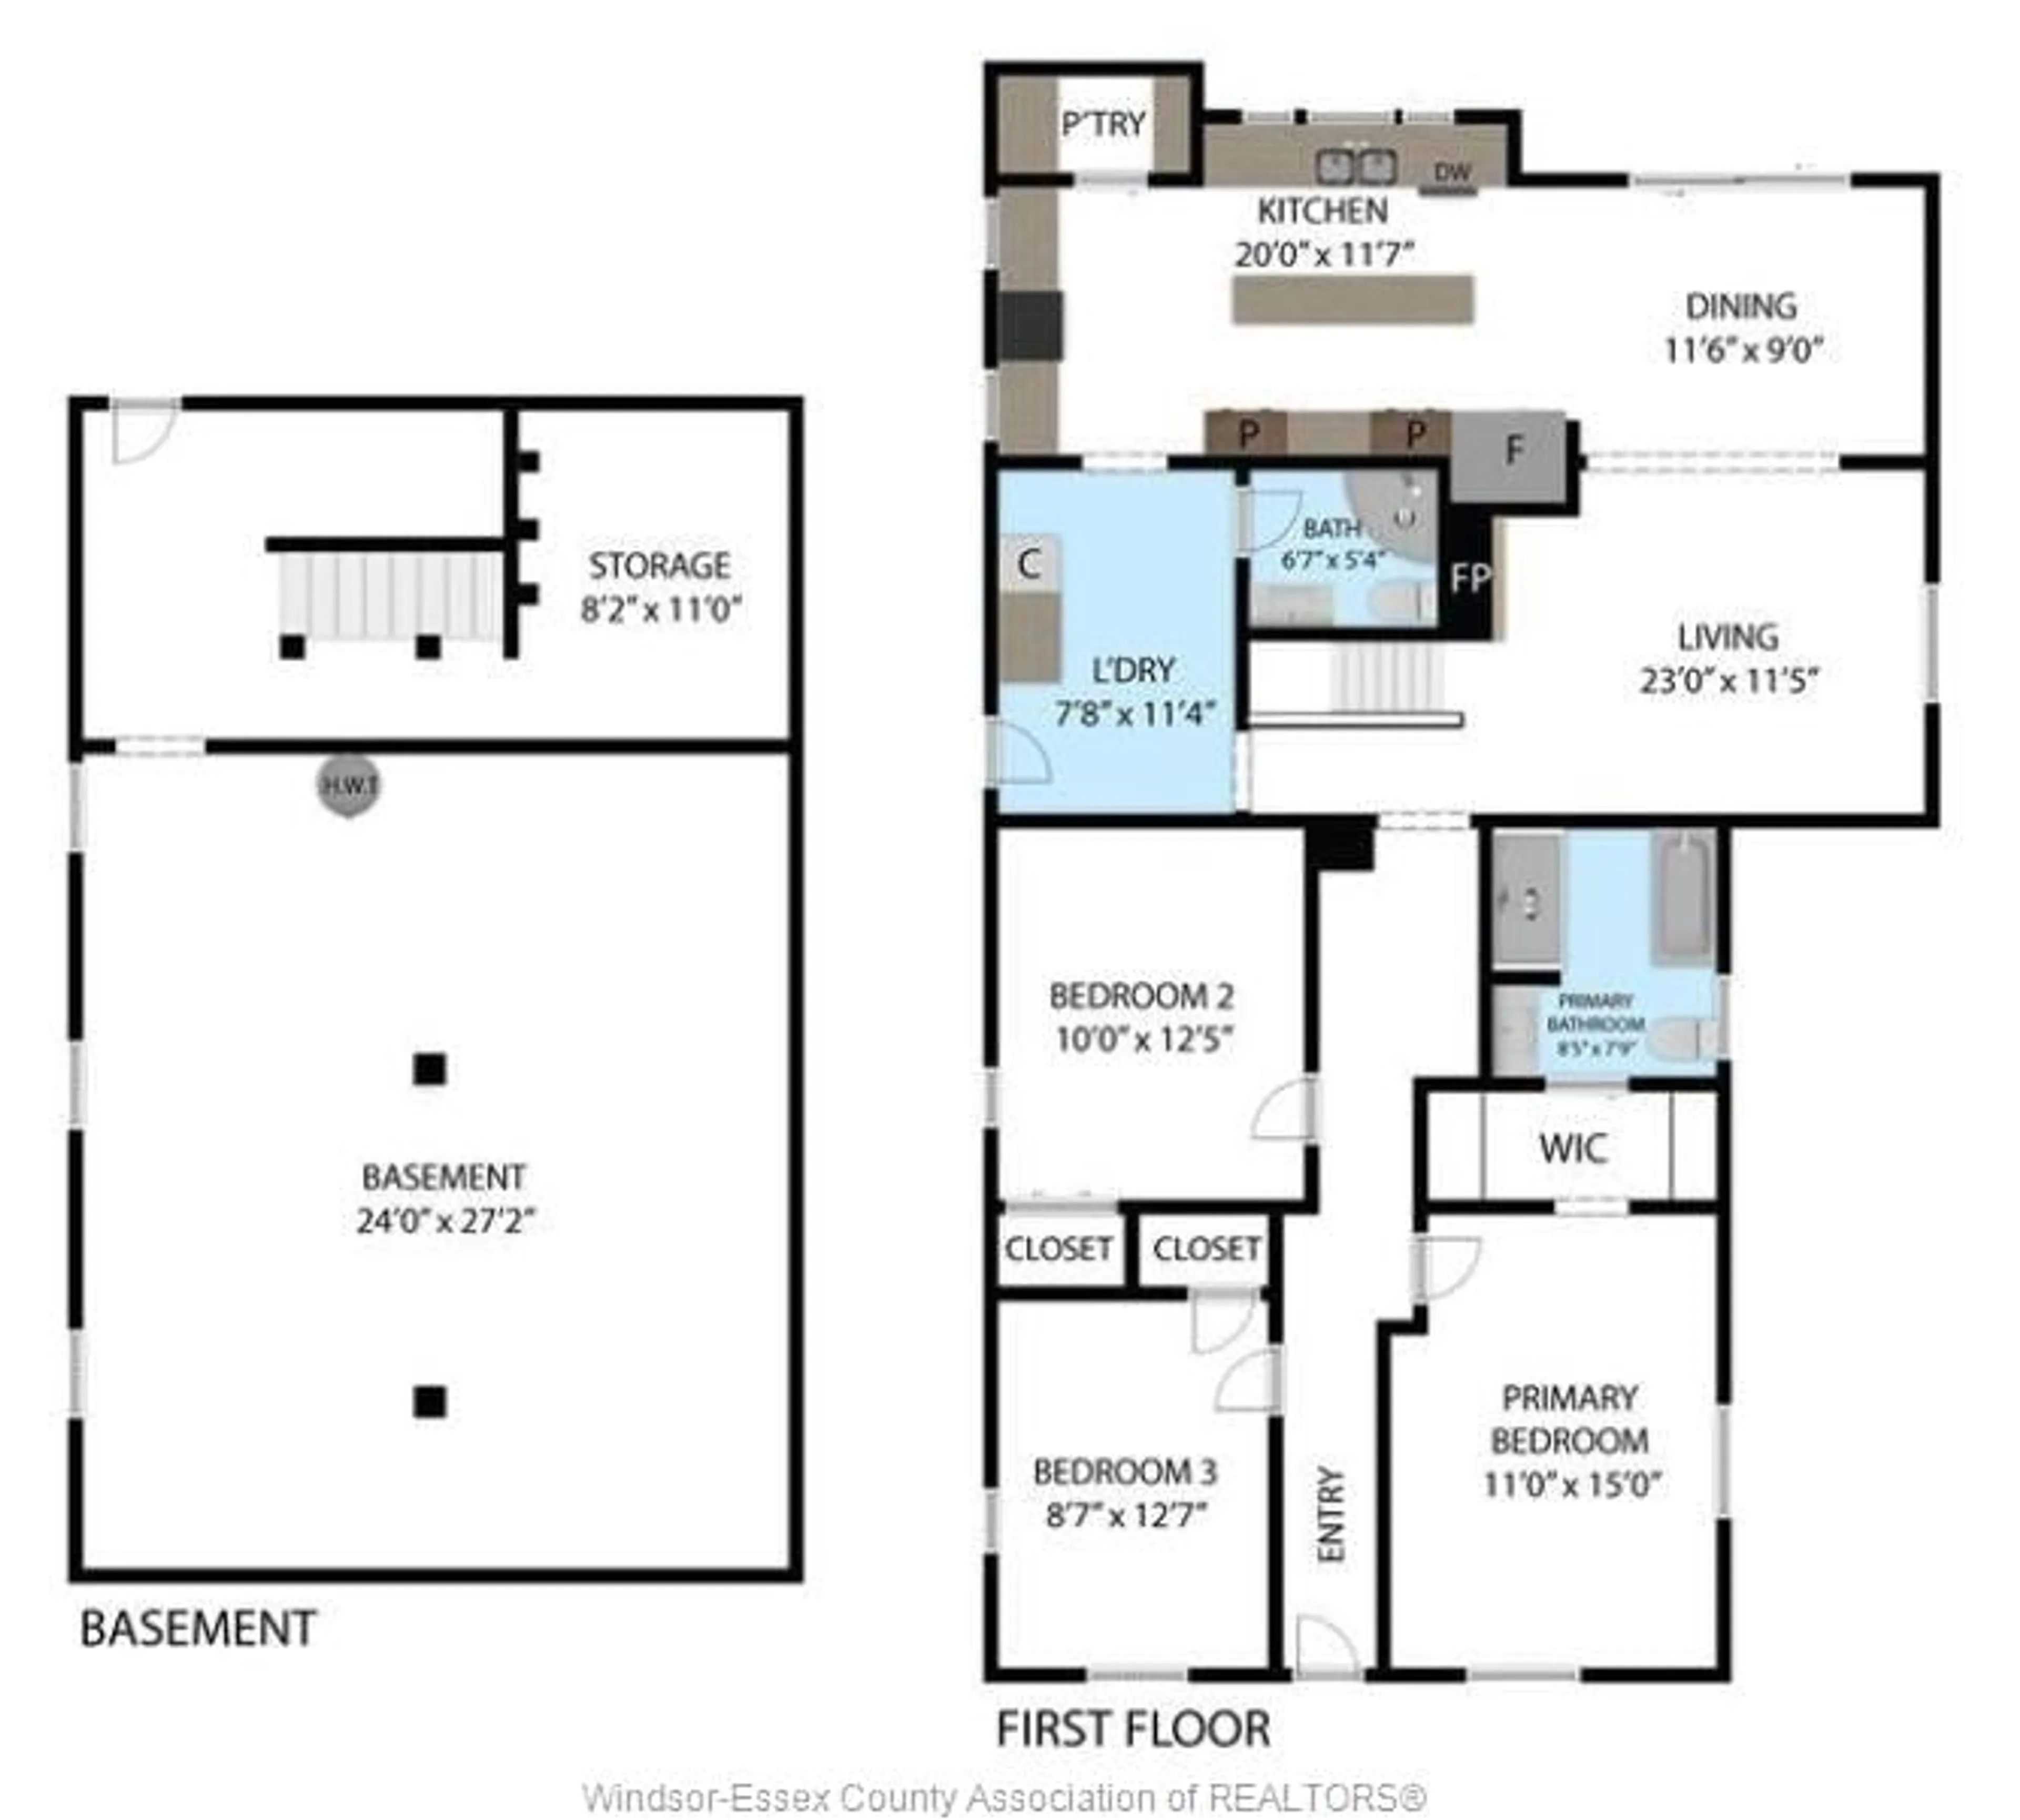 Floor plan for 44 Mill Street West, Kingsville Ontario N9Y 1V9